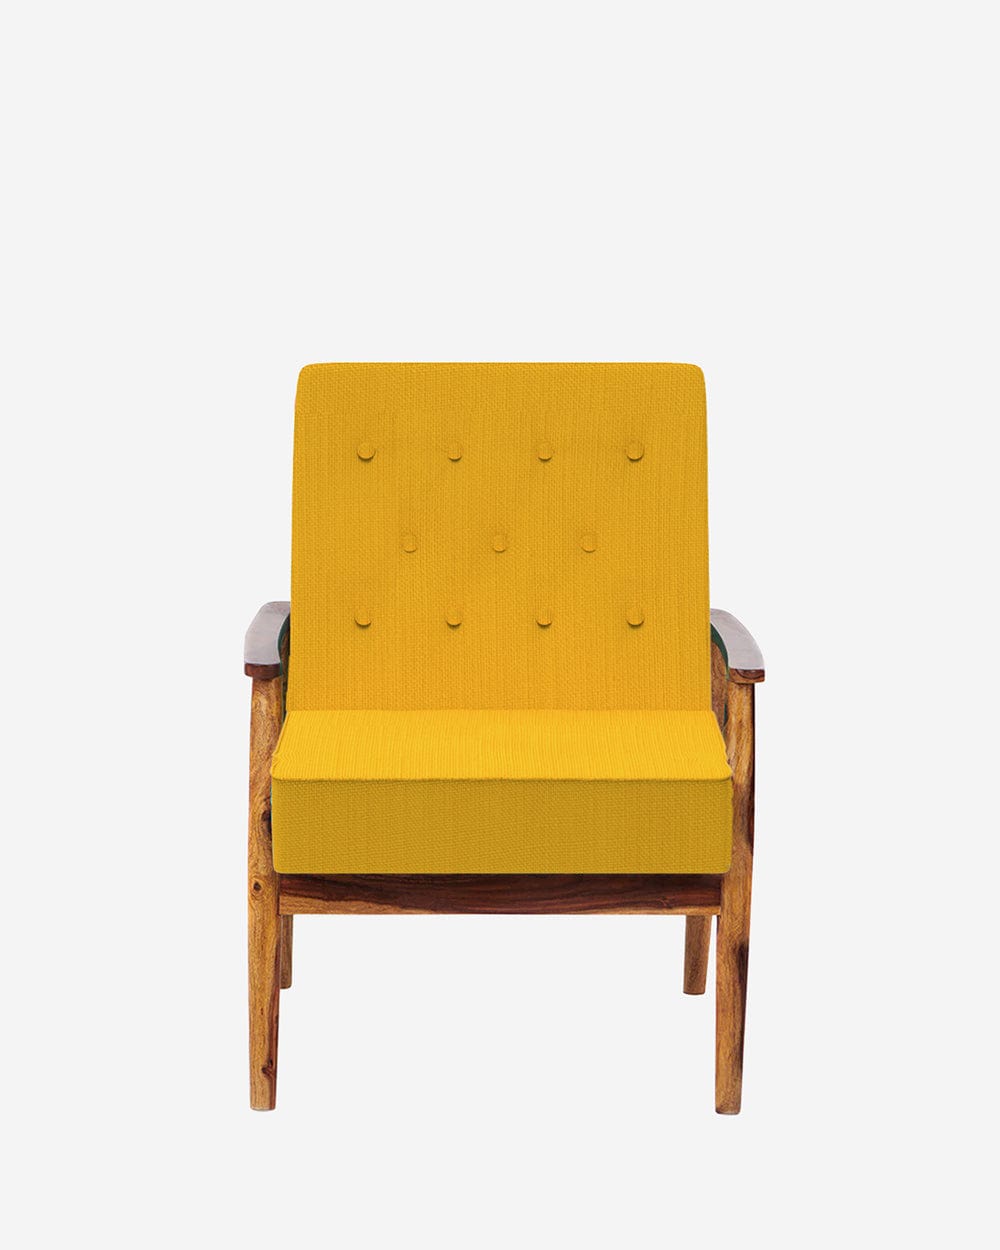 Chumbak Memsaab Arm Chair - Sahara Mustard